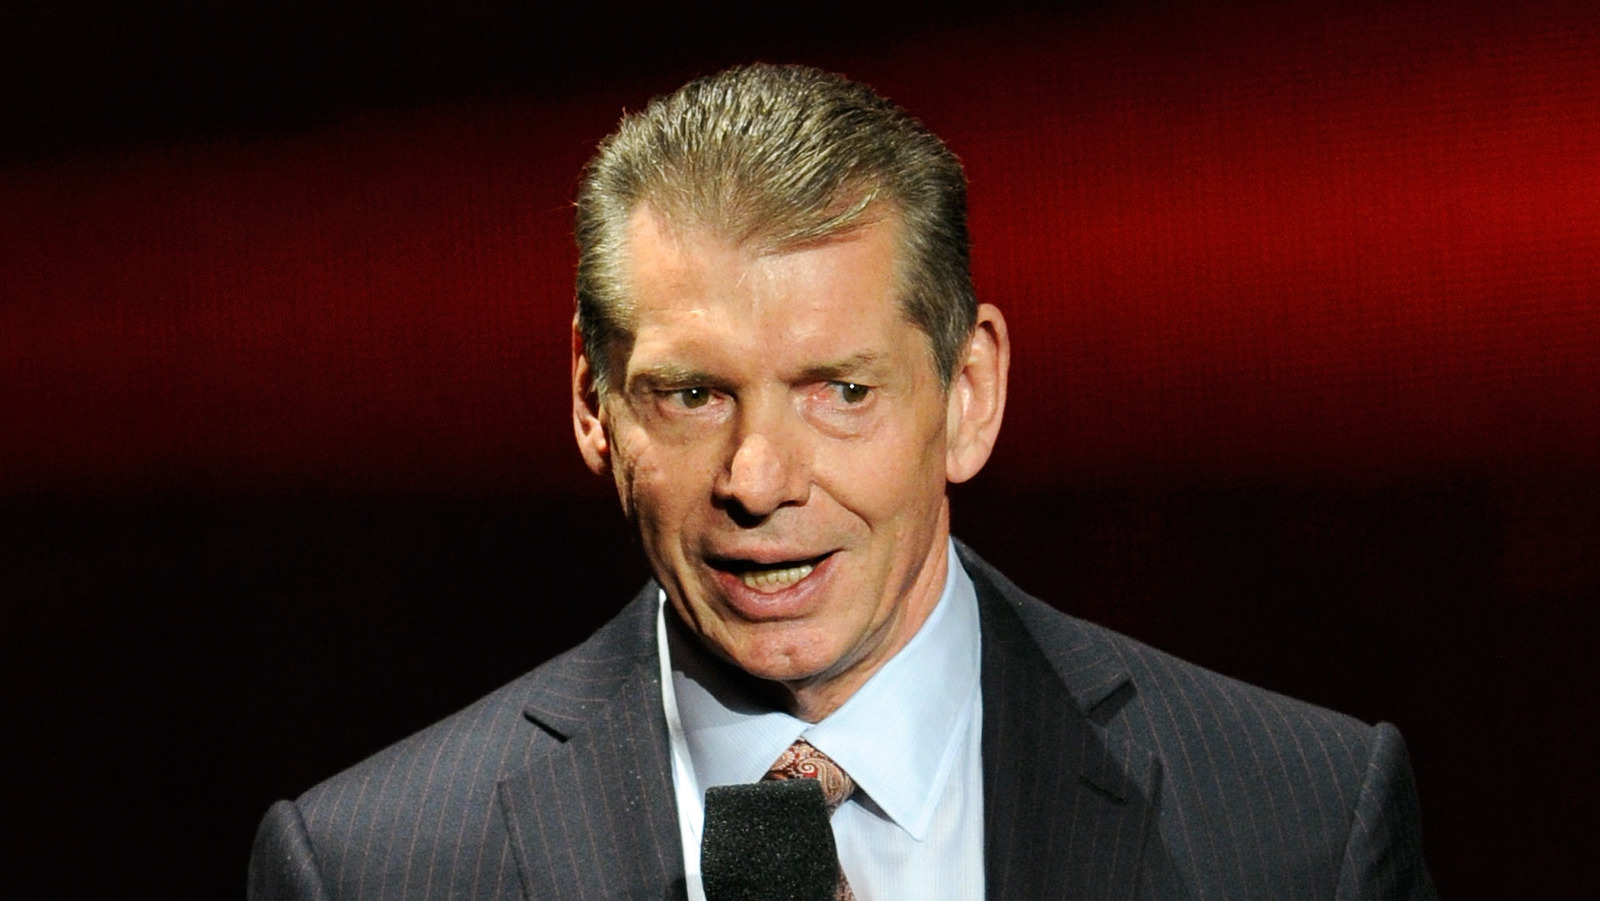 Según los informes, Vince McMahon estuvo muy involucrado en WWE Creative antes de la cirugía de columna